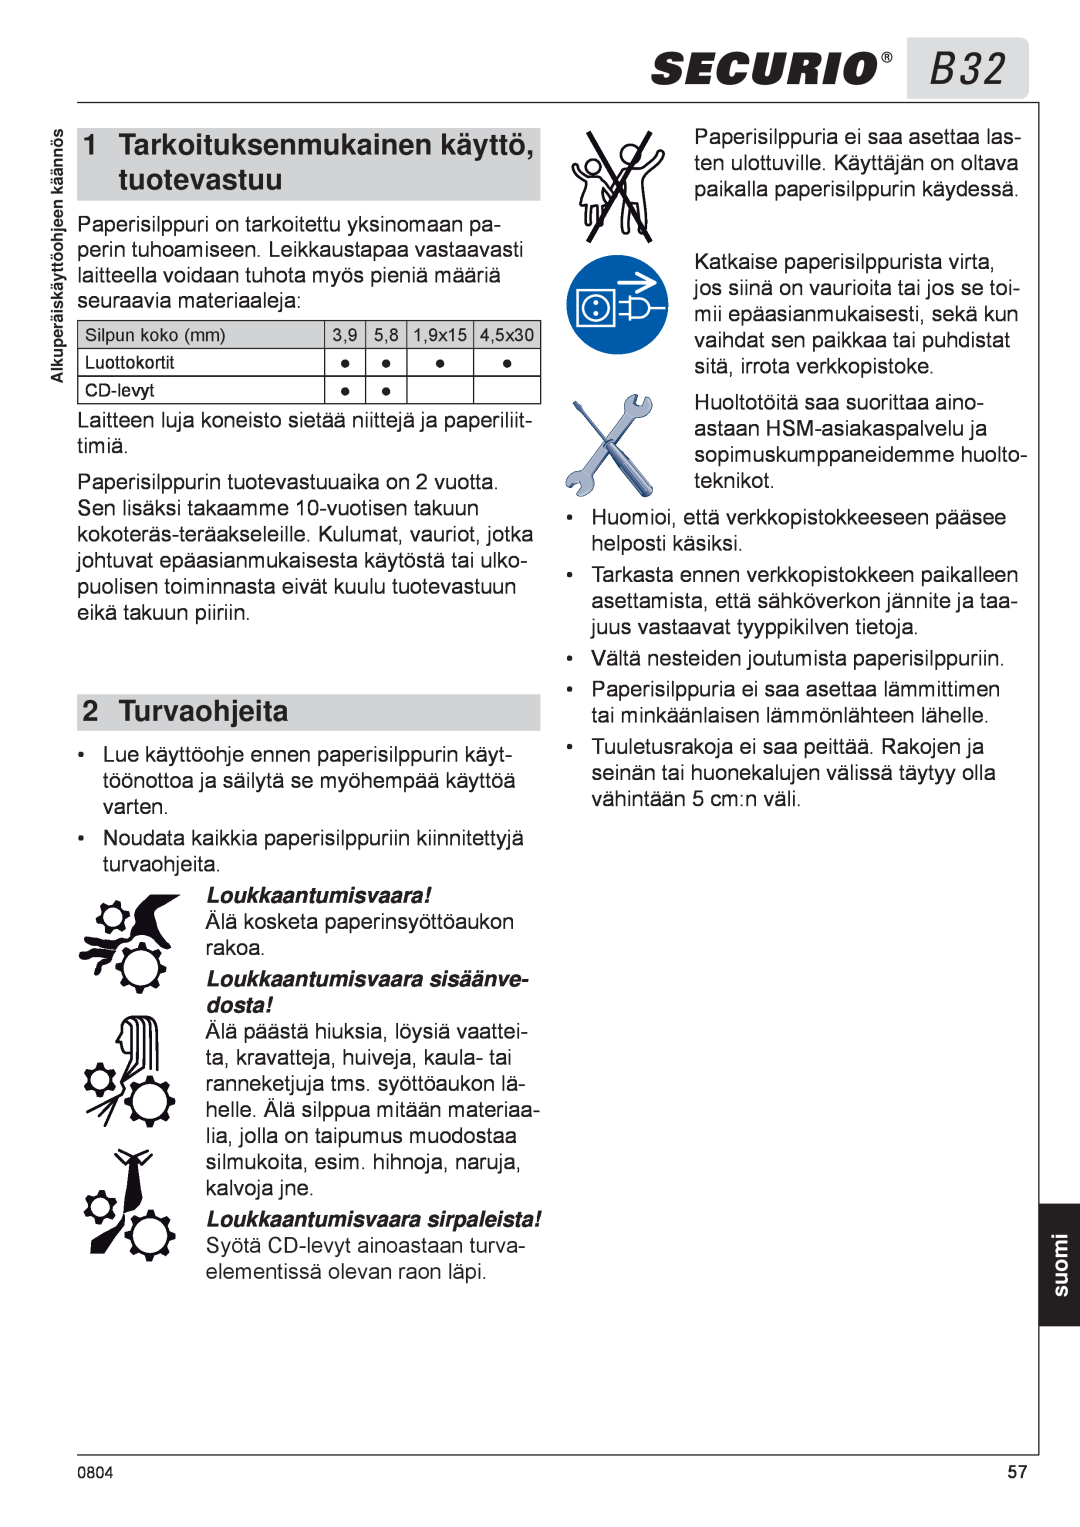 HSM B32 manual tuotevastuu, Tarkoituksenmukainen käyttö, Turvaohjeita, Loukkaantumisvaara sisäänve- dosta, suomi 